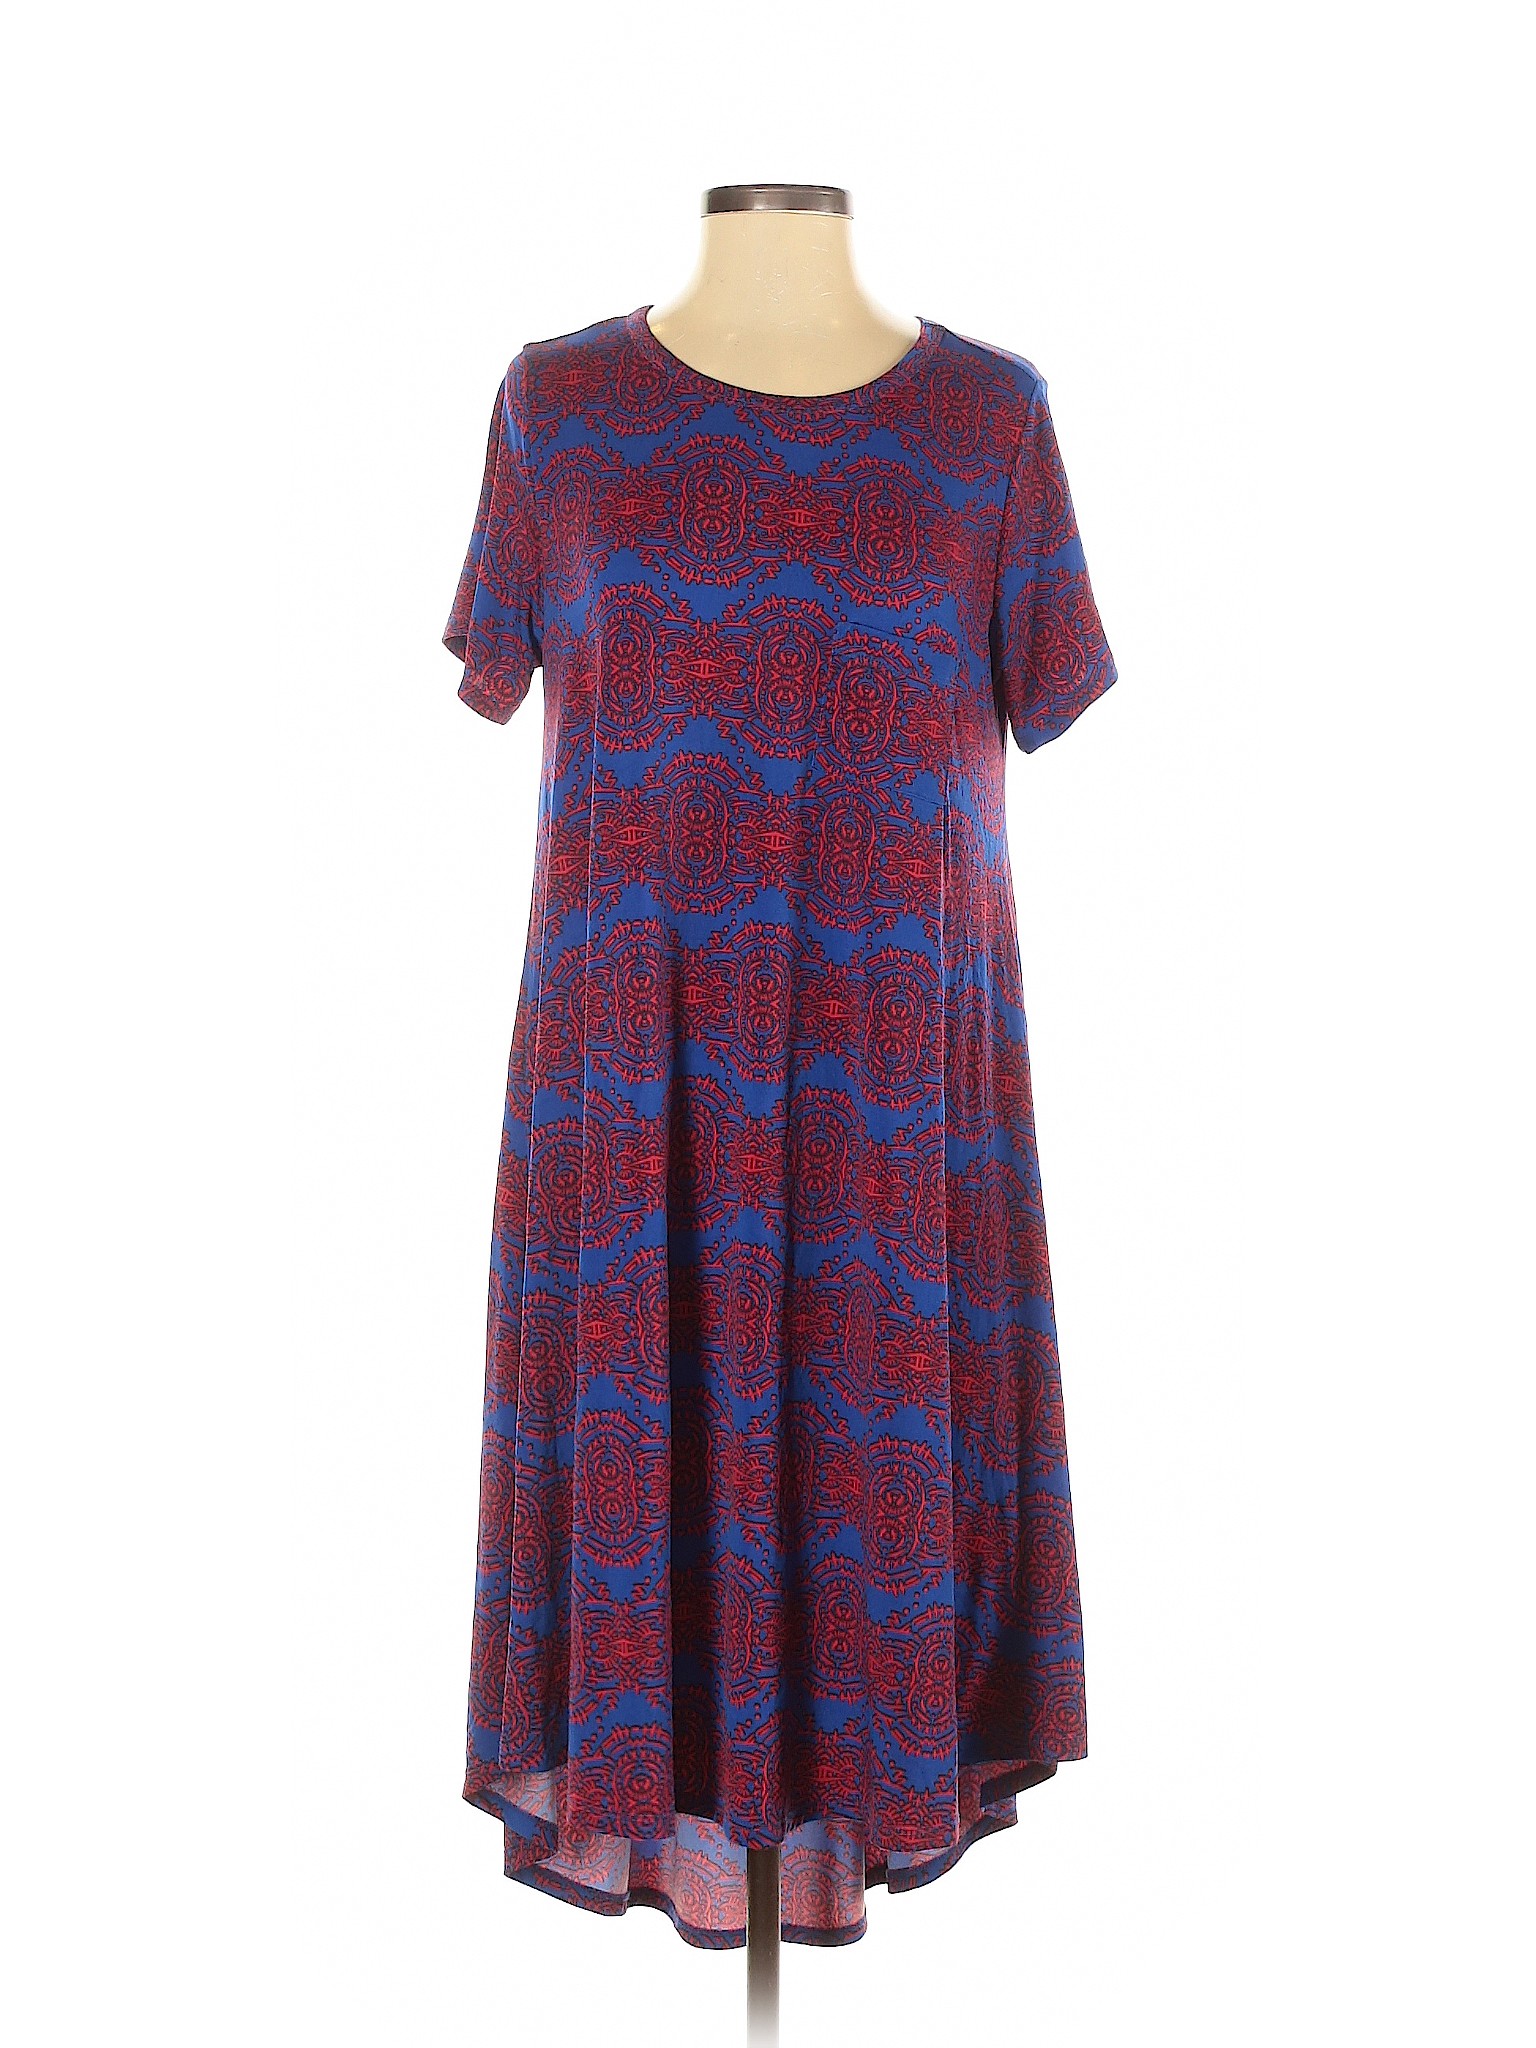 Lularoe Women Blue Casual Dress S | eBay